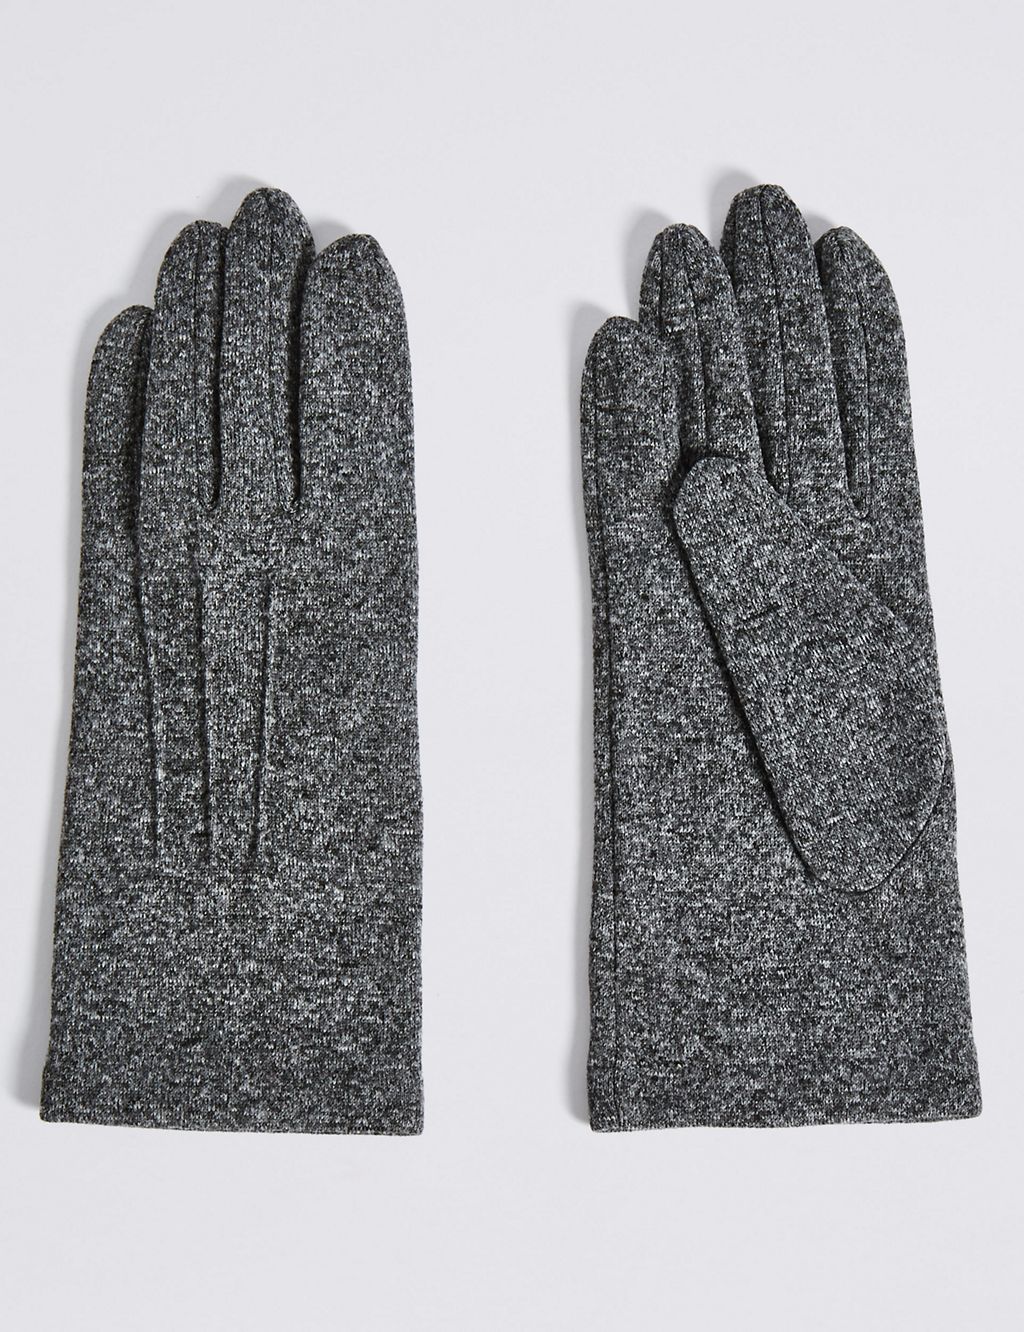 Stitch Detail Gloves 2 of 2